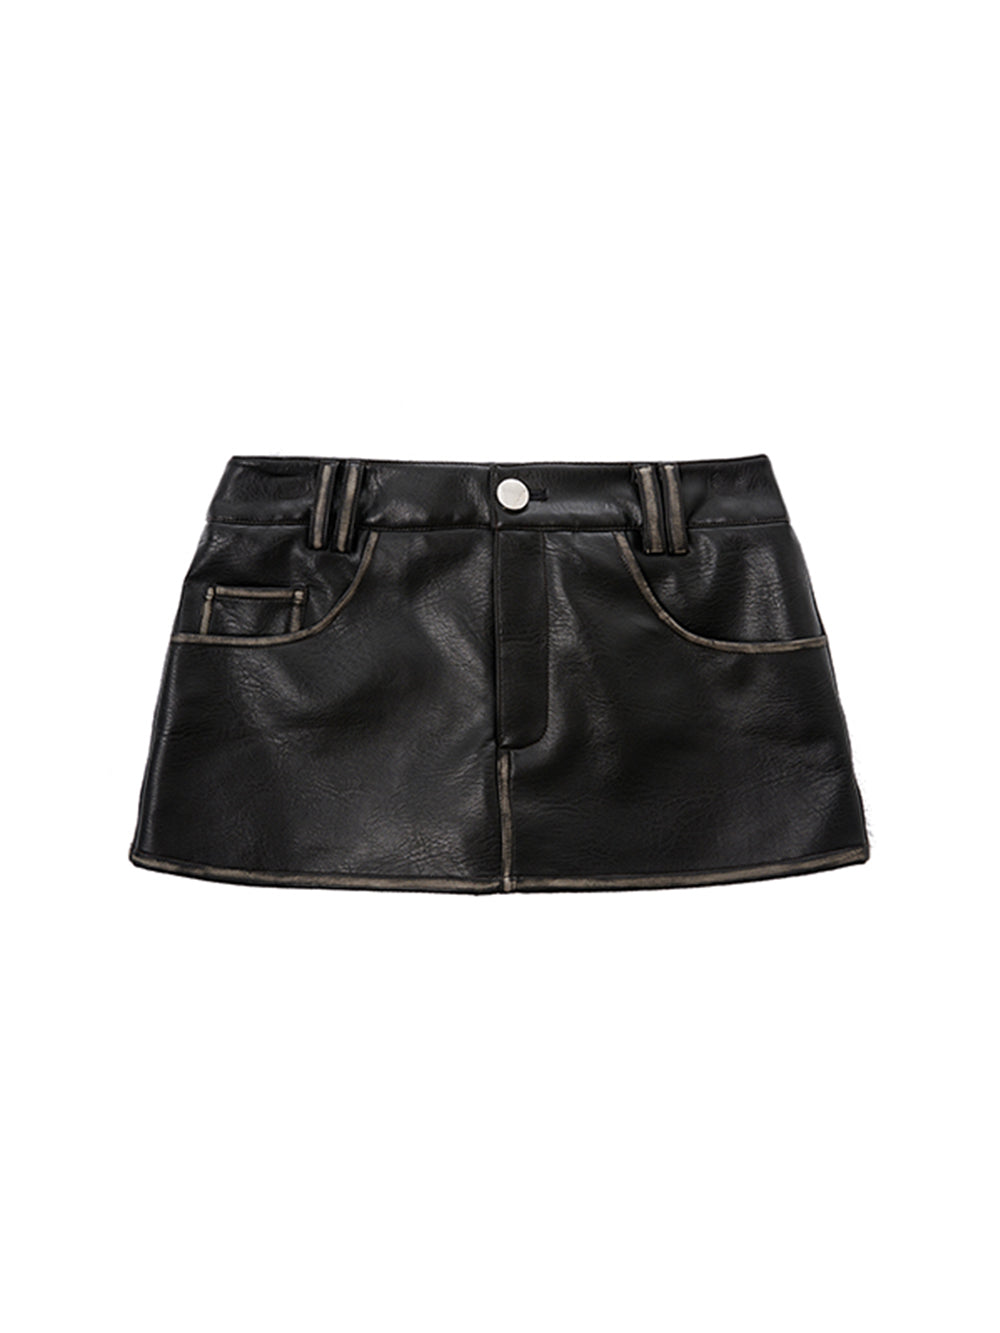 MUKTANK x MODULER Hand-colored Waist Leather Skirt